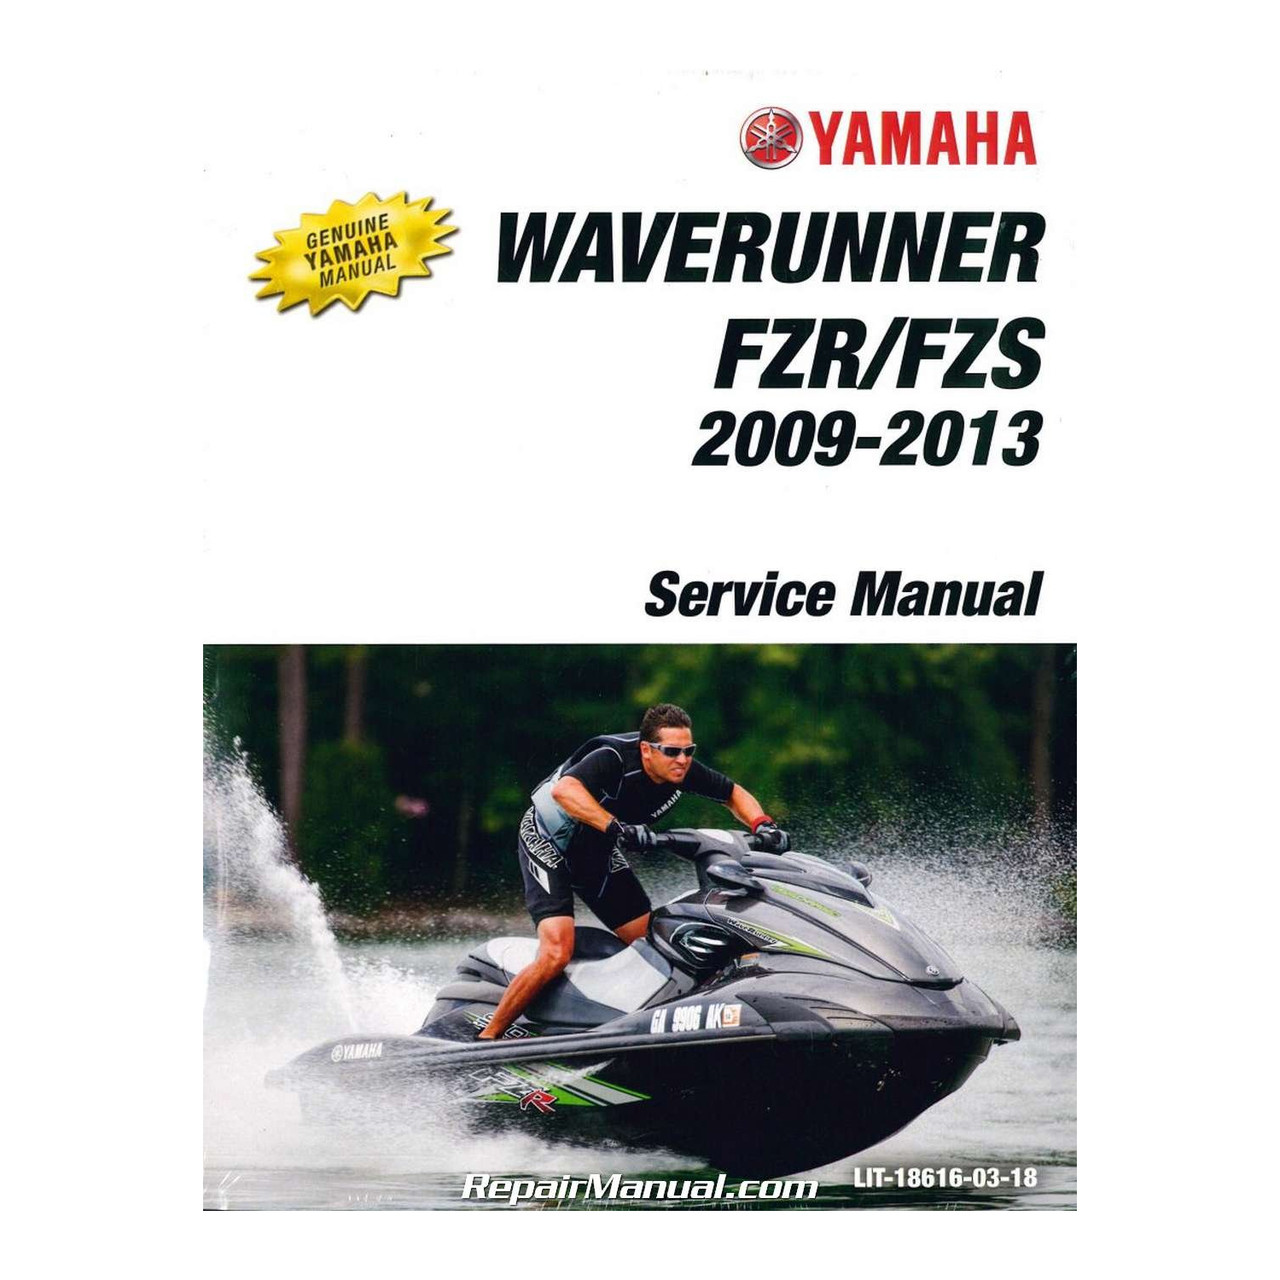 Yamaha New OEM 09 Gx1800h/Ah Service Manual, LIT-18616-03-18